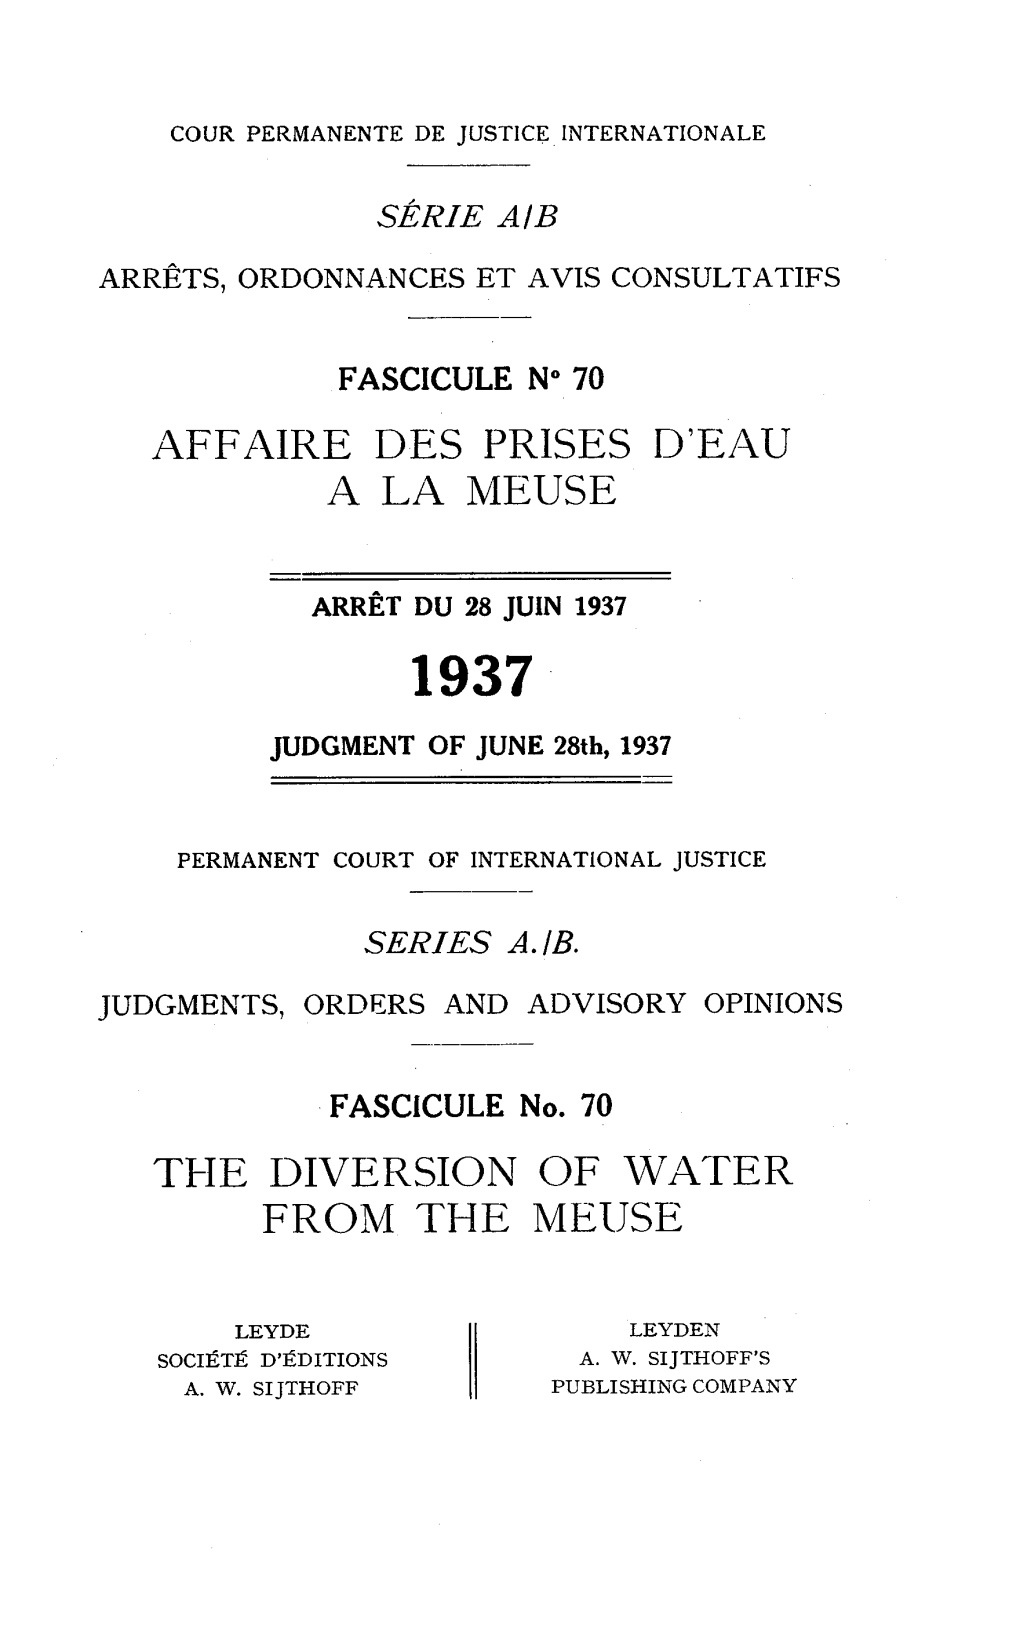 Affaire Des Prises D'eau a La Meuse the Diversion Of